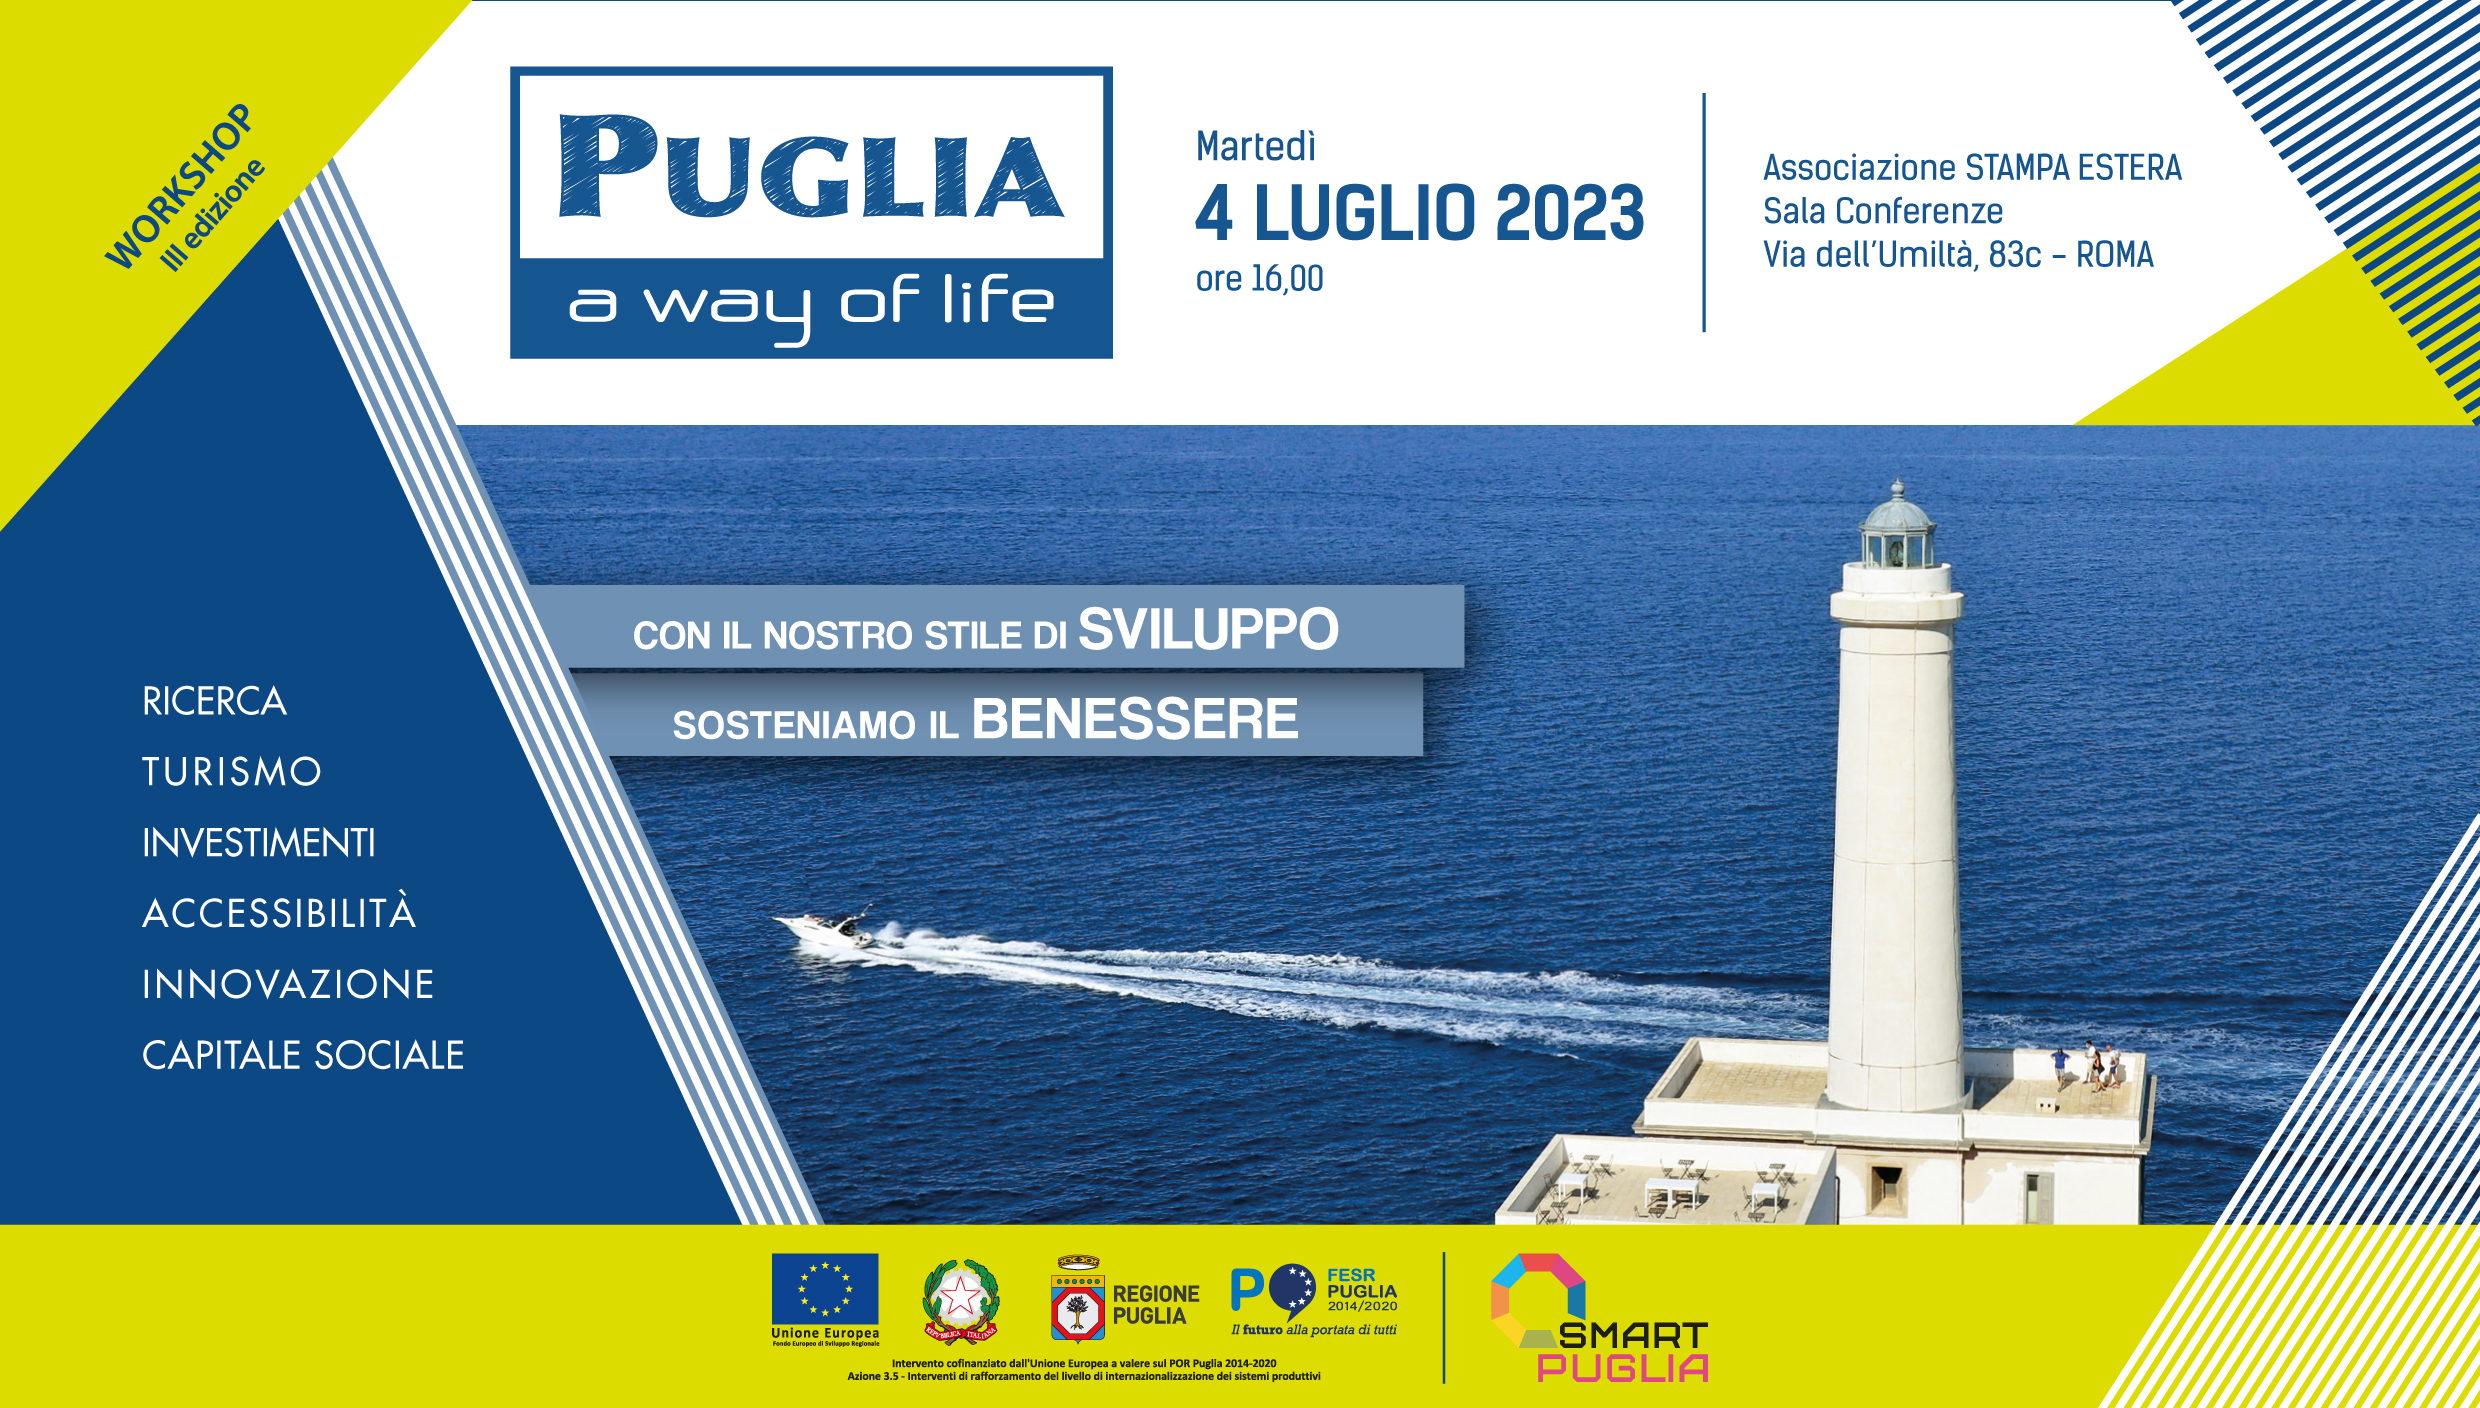 Galleria Grande successo per “Puglia, a way of life”, workshop romano sul modello di sviluppo pugliese - Diapositiva 1 di 6